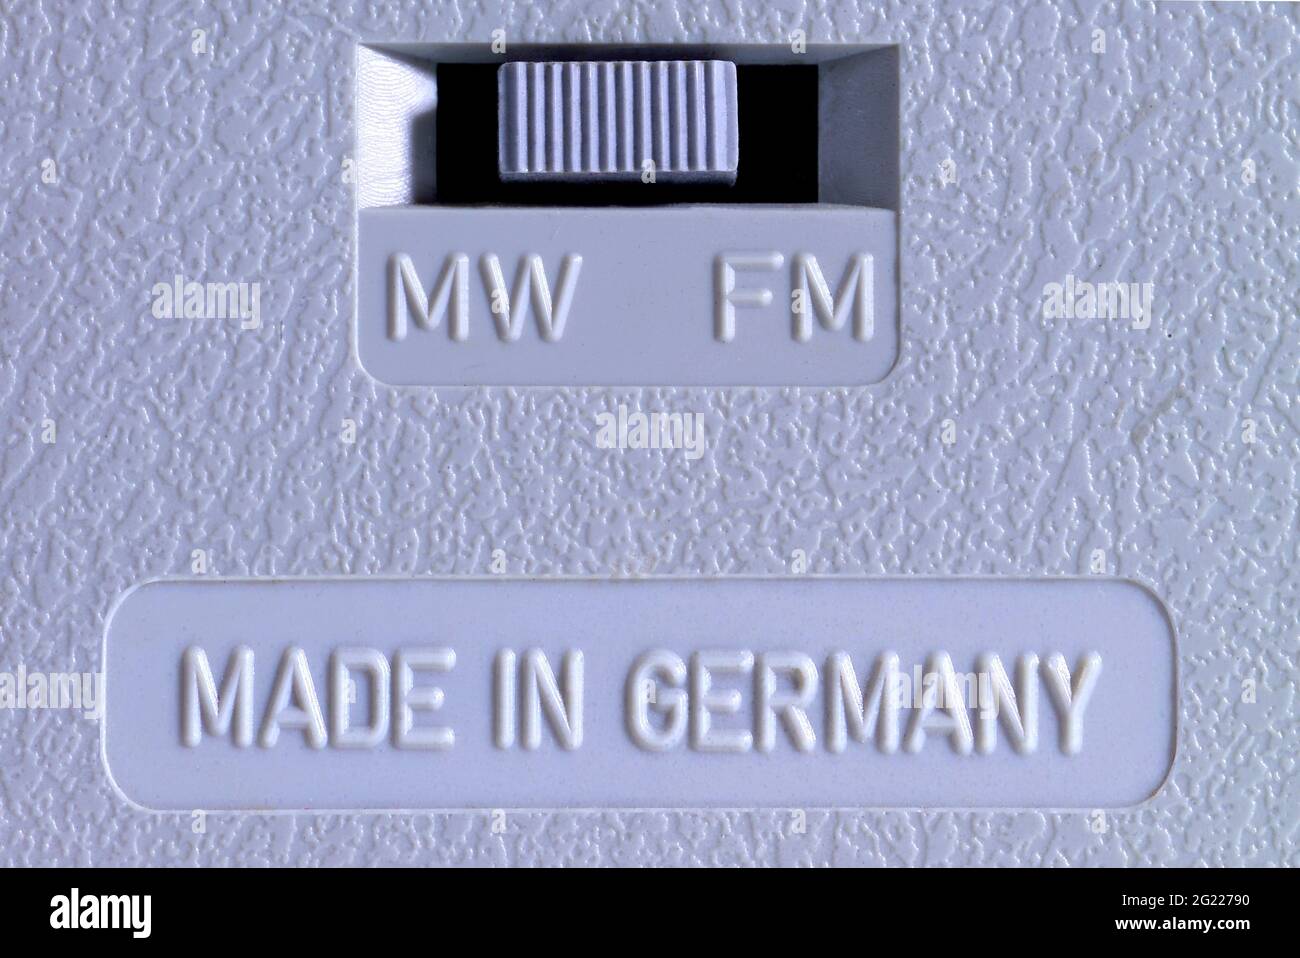 Rundfunk, Radio, Technik, Symbolbild, Made in Germany, Rückseite eines alten Siemens-Funkgerätes, ZUSÄTZLICHE-RIGHTS-CLEARANCE-INFO-NOT-AVAILABLE Stockfoto